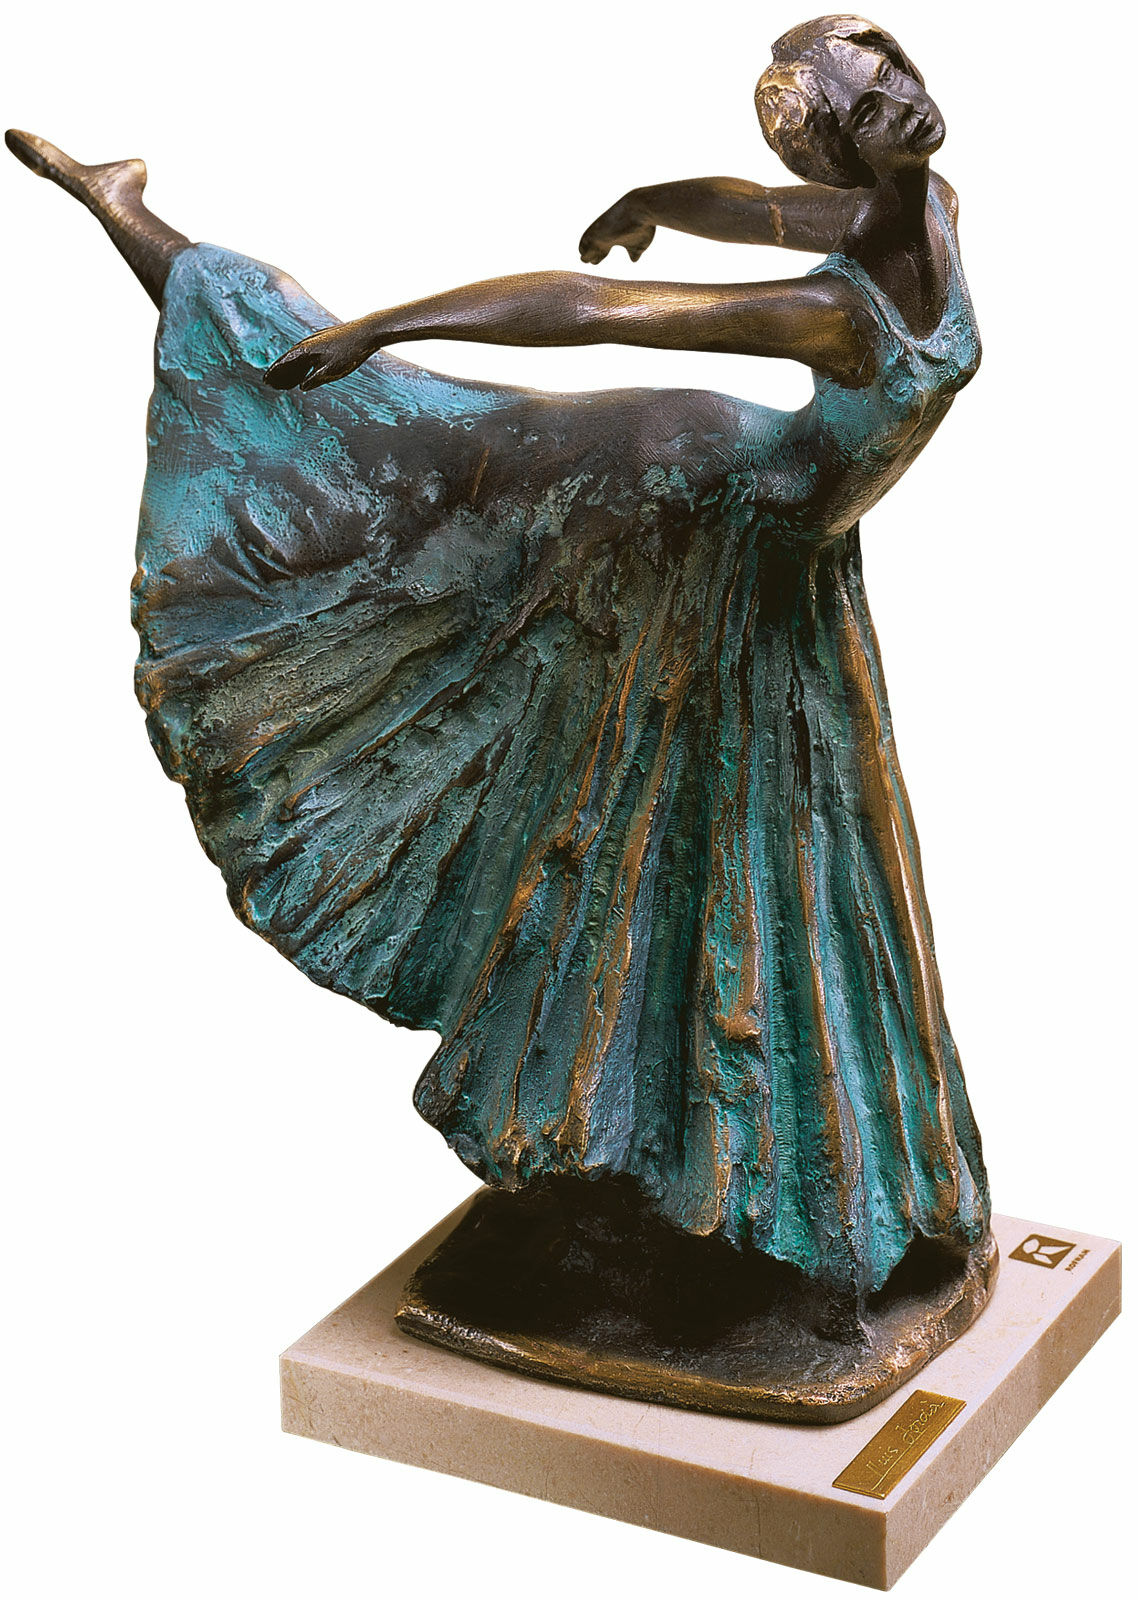 Sculpture Ballerina "Arabesco", bonded bronze by Lluis Jorda